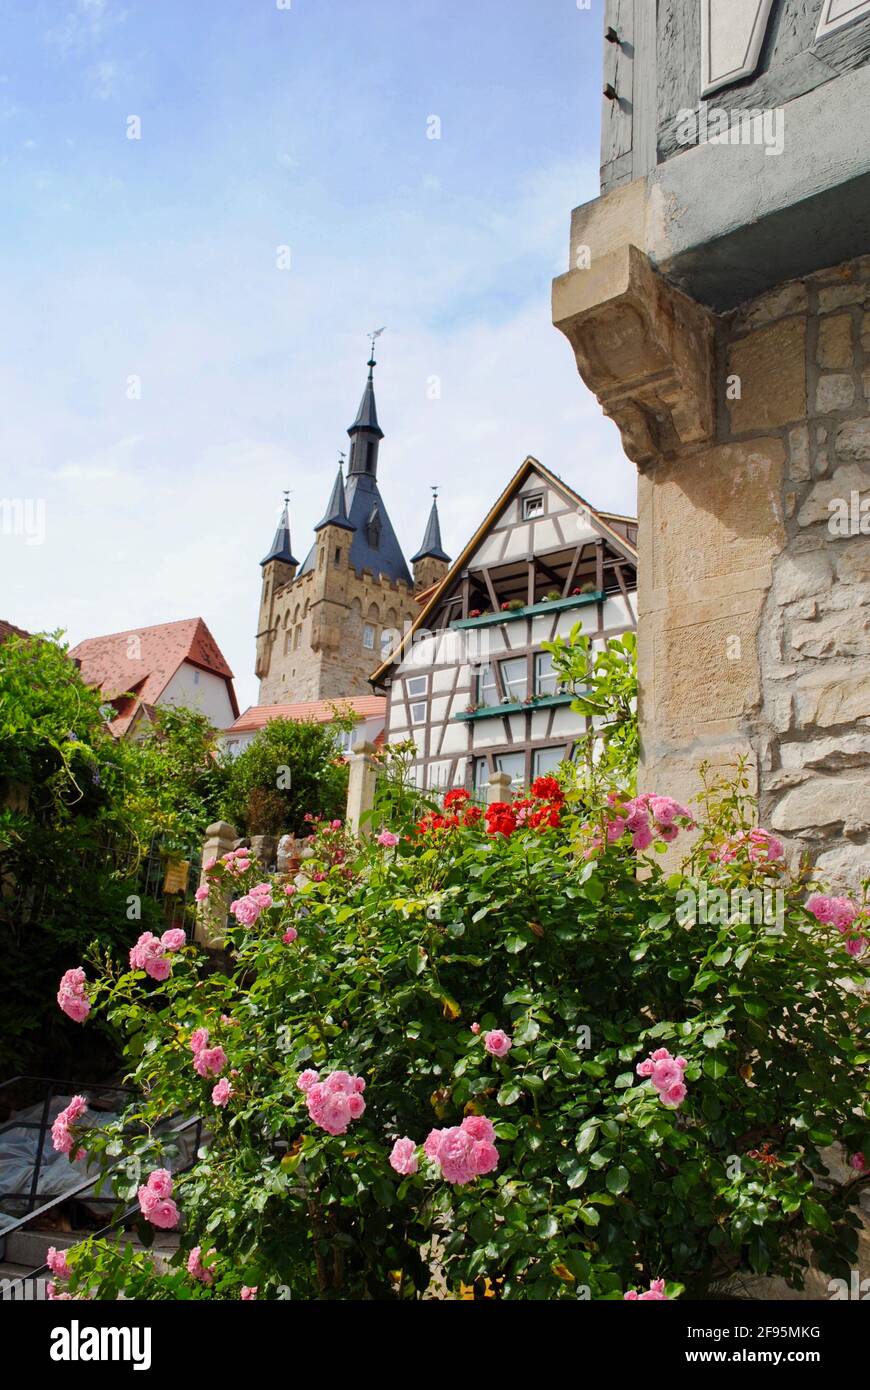 Traditionelle Fachwerkhäuser und Blauer Turm mit rosa Rosen und einer Steinmauer in Bad Wimpfen, Deutschland, im Landkreis Heilbronn Stockfoto